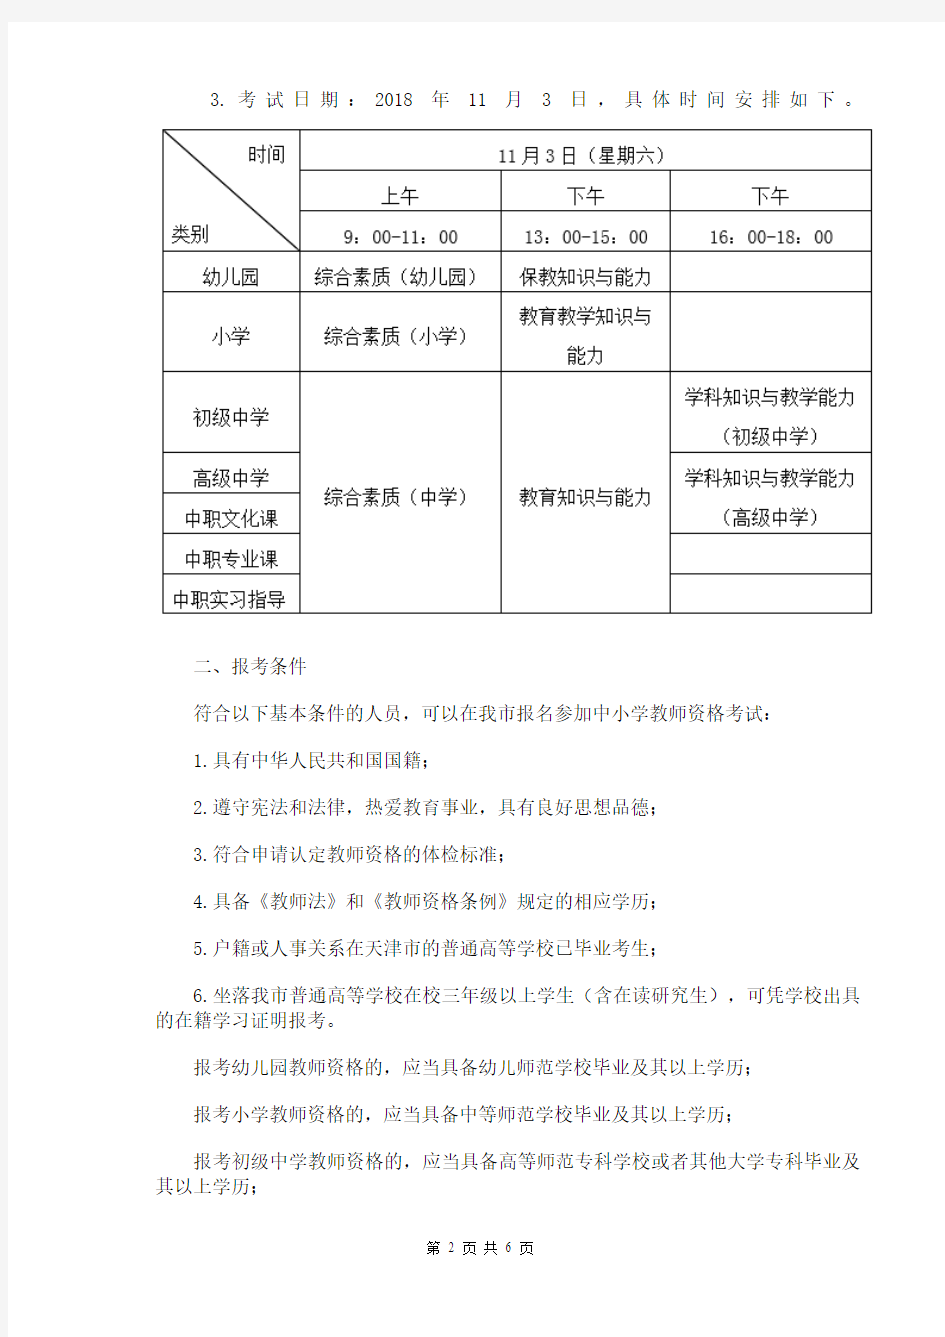 2018年下半年天津市全国中小学教师资格考试(笔试)公告